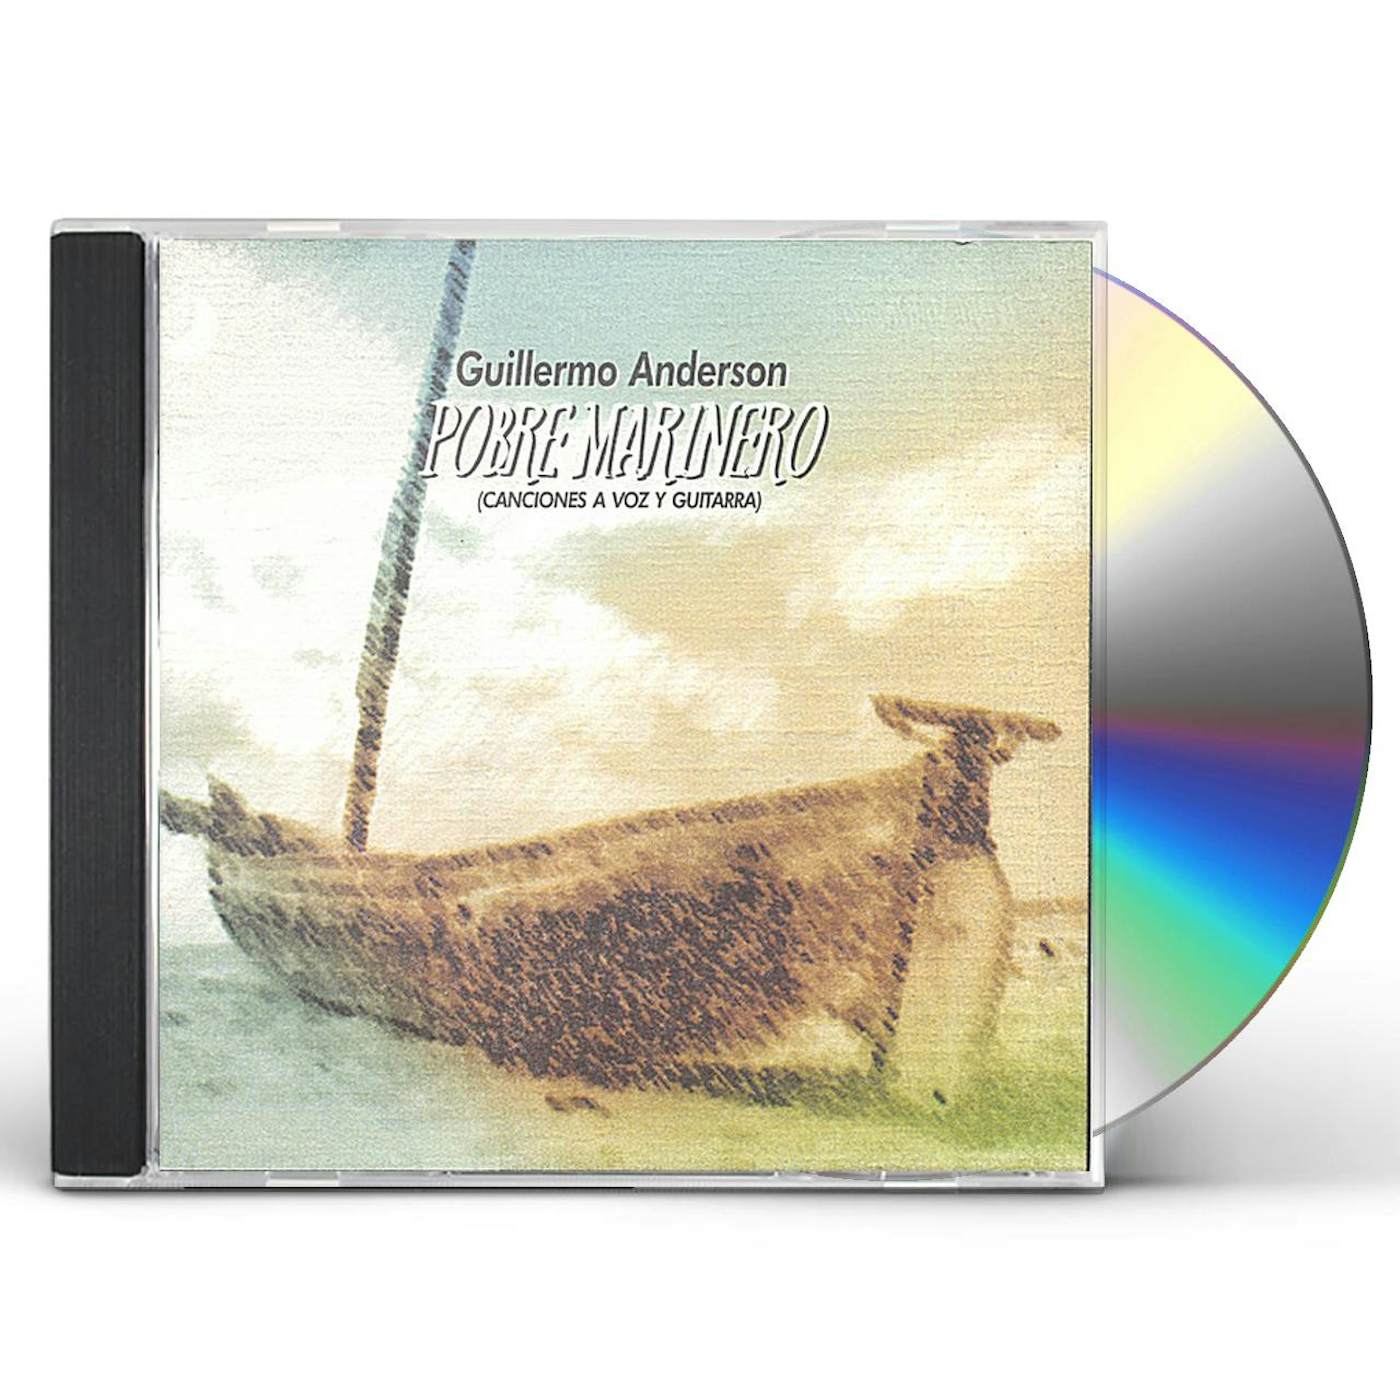 Guillermo Anderson POBRE MARINERO CD